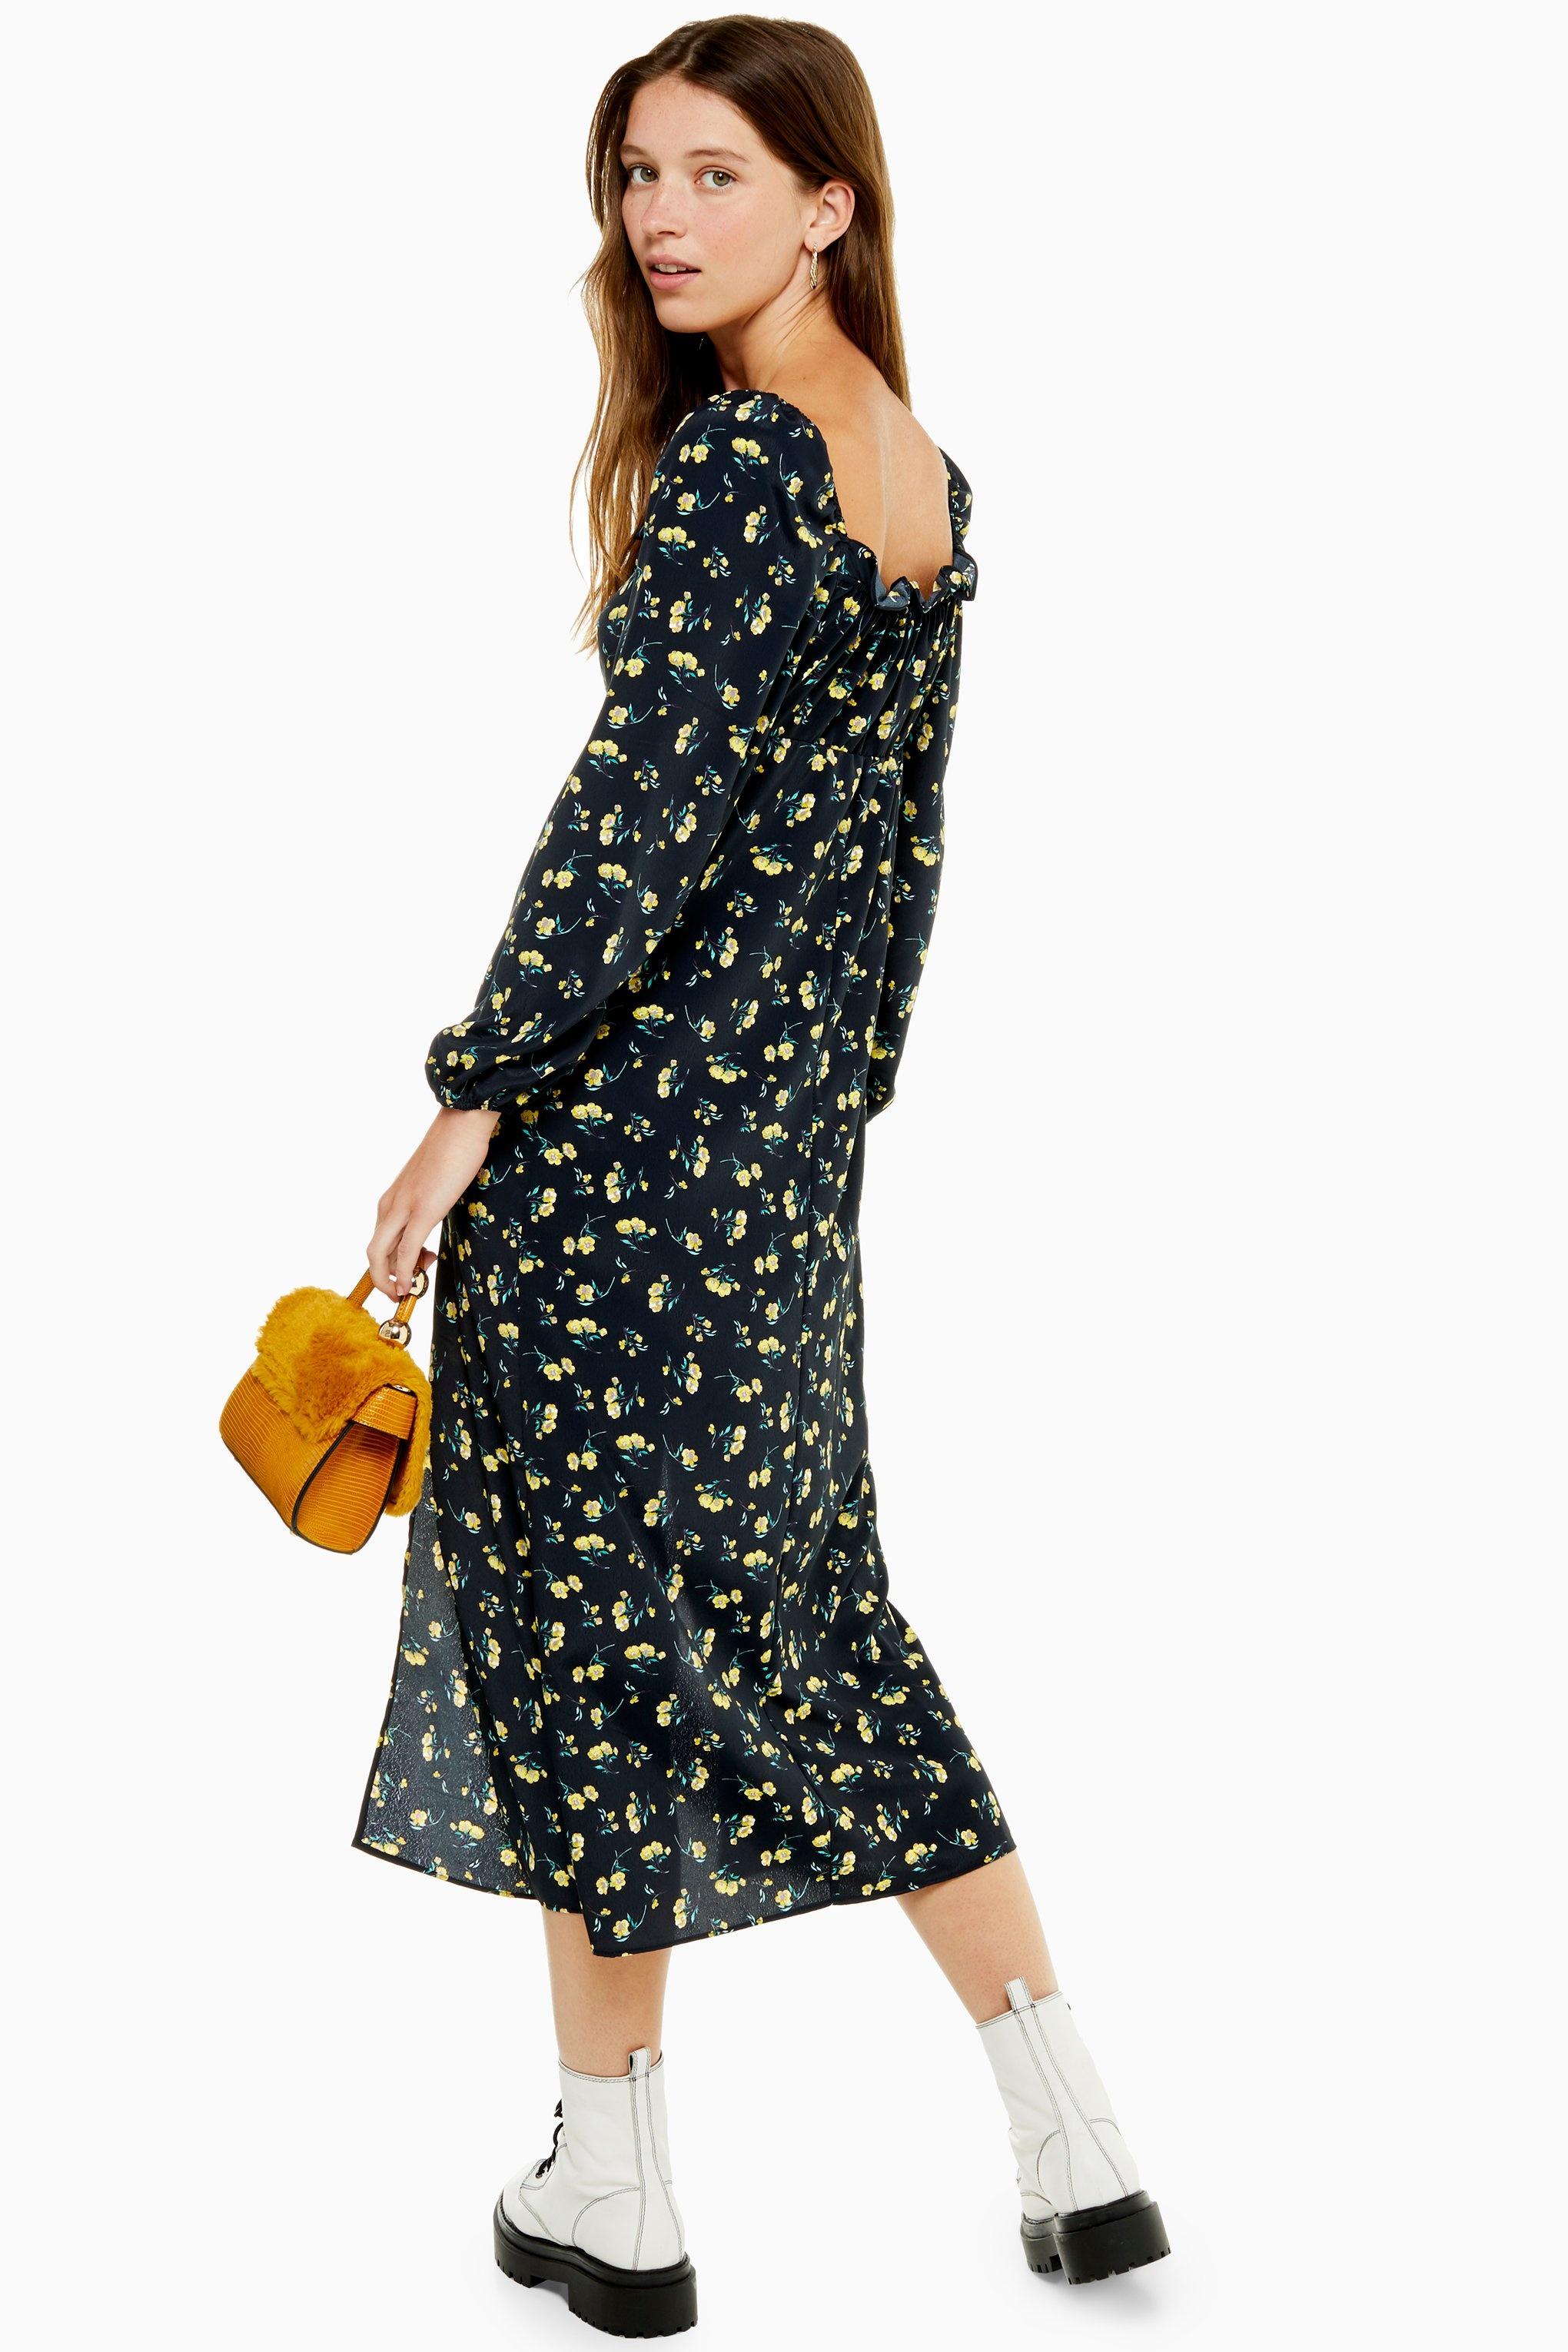 Topshop Yellow Floral Dress Sale Online, SAVE 57% - primera-ap.com